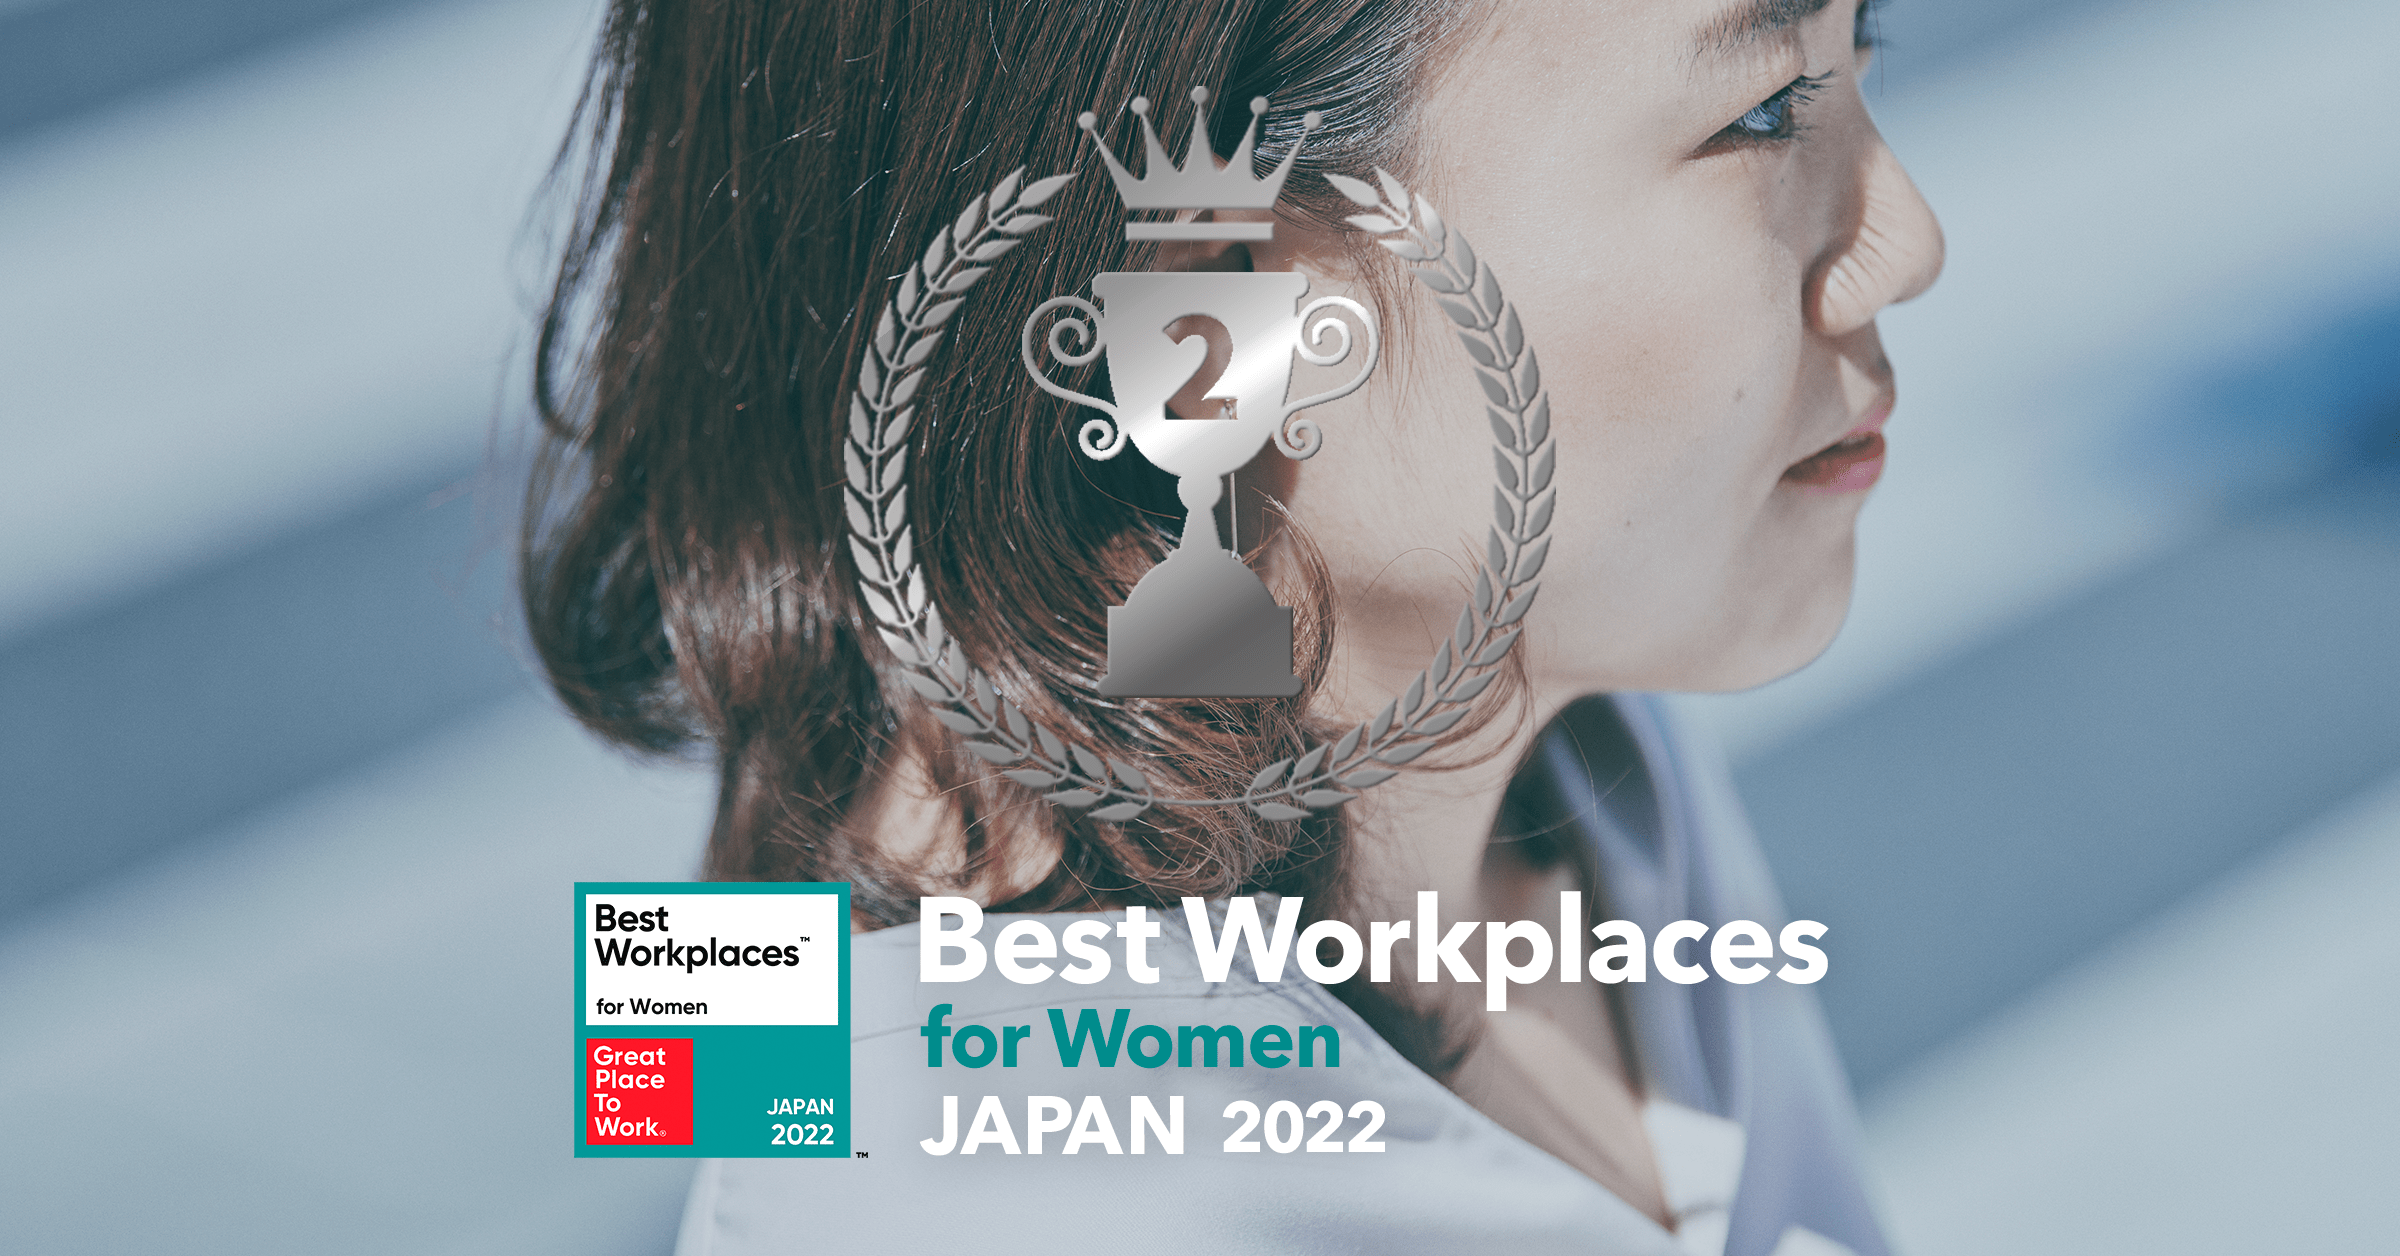 Great Place to Work発表、2022年版「働きがいのある会社」女性ランキングでキュービックが第2位を獲得